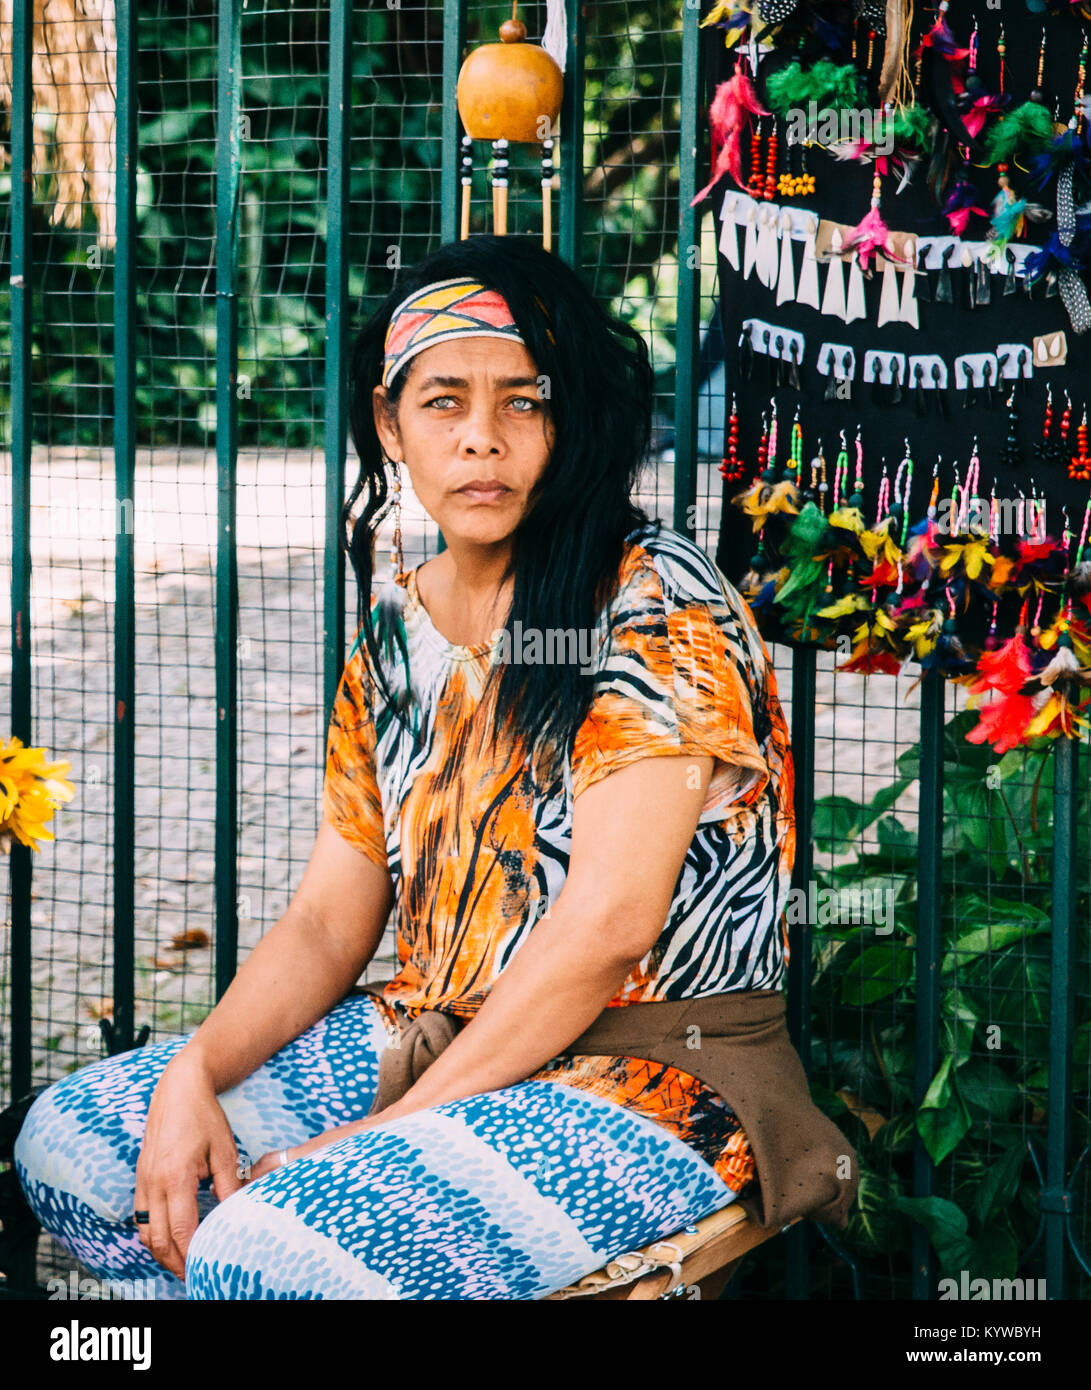 Regard inquiet de race mixte femme indigène brésilien vente de produits à un marché de rue à Belo Horizonte, Minas Gerais, Brésil Banque D'Images